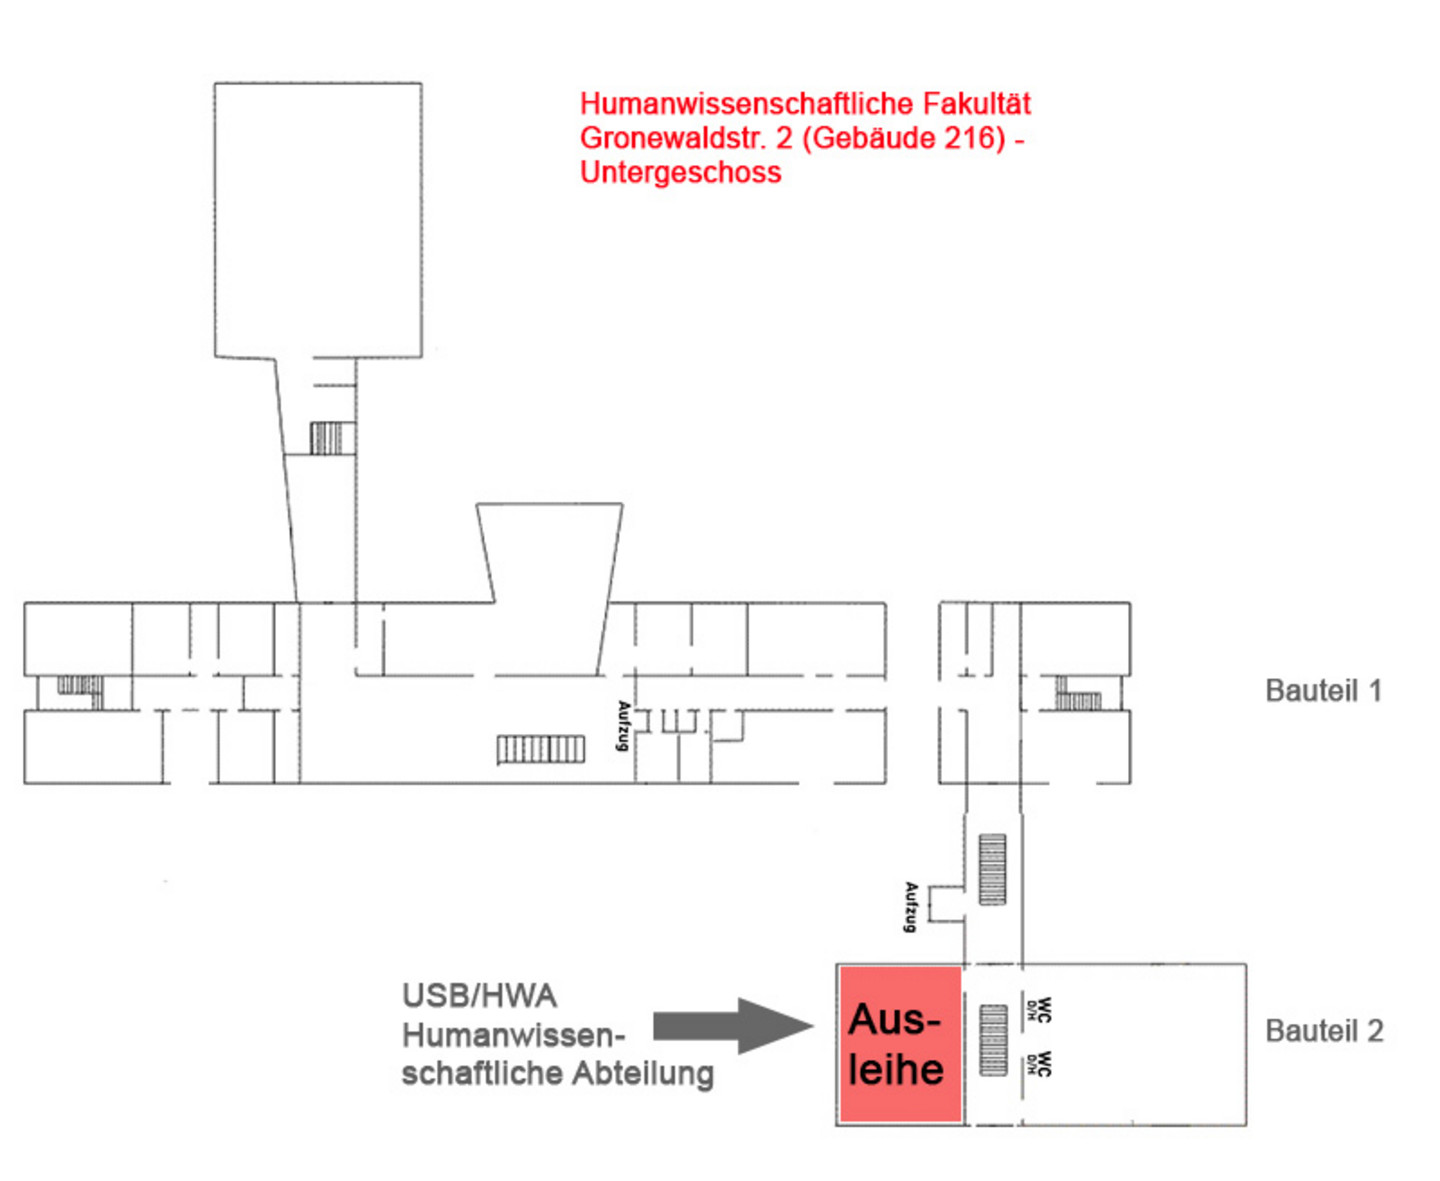 Lageplan des Untergeschosses der Humanwissenschaftlichen Fakultät, Gronewaldstr. 2. Markiert ist die Ausliehe der Humanwissenschaftlichen Abteilung der Universitäts- und Stadtbibliothek Köln.